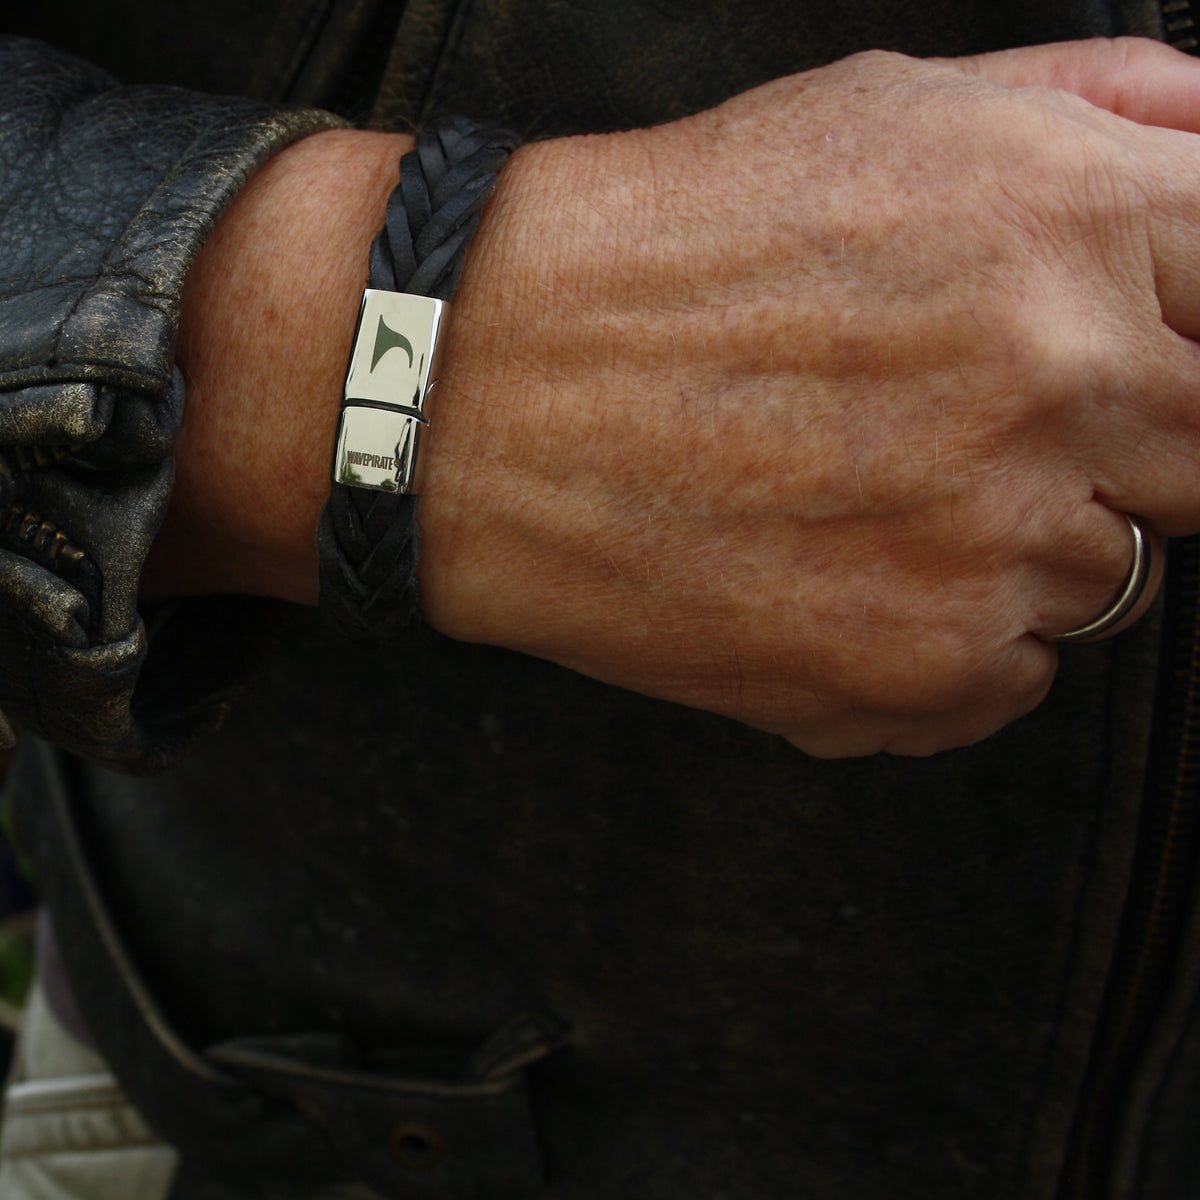 Herren-Leder-Armband-Tarifa-schwarz-geflochten-flach-Edelstahlverschluss-getragen-wavepirate-shop-f15